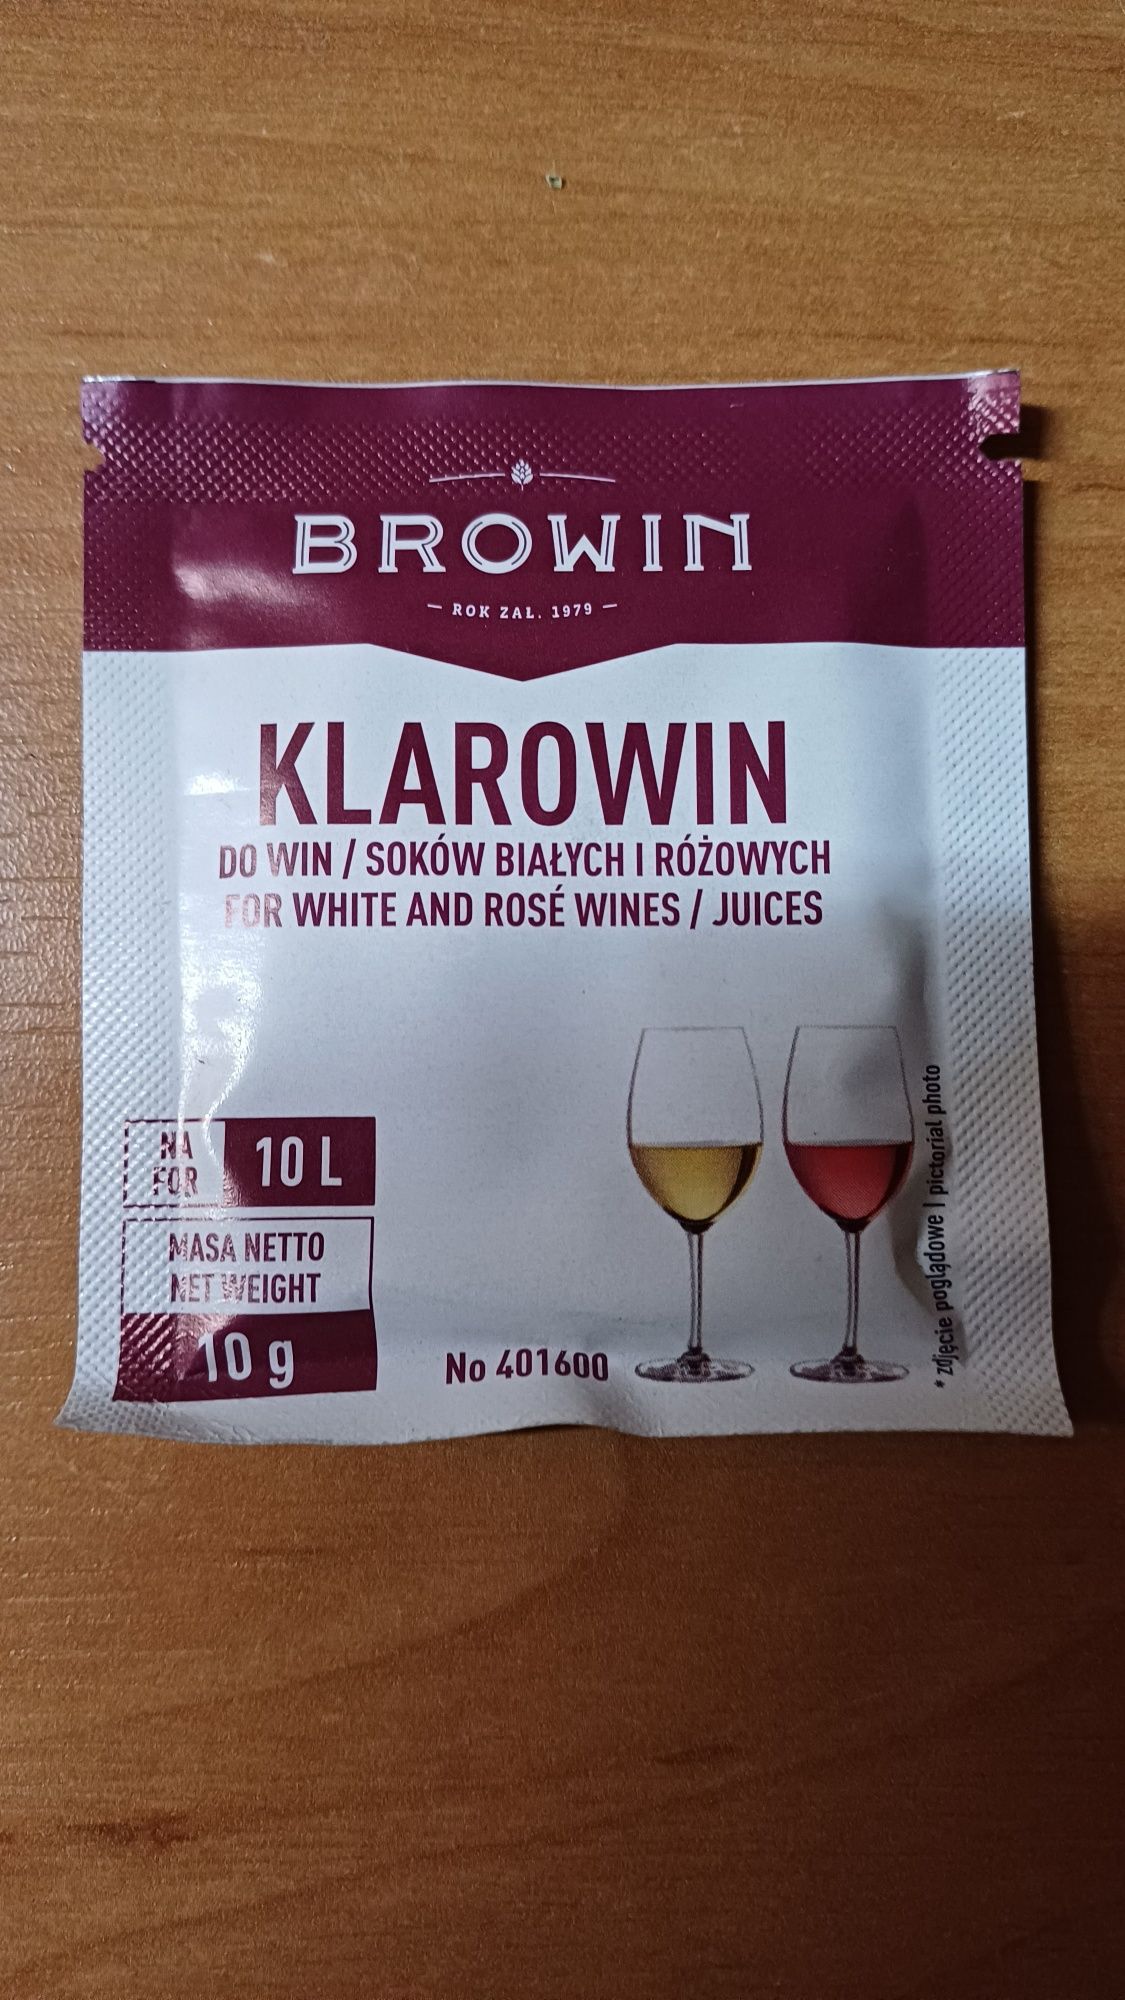 KLAROWIN do win białych, różowych i soków 4 x 10 gram